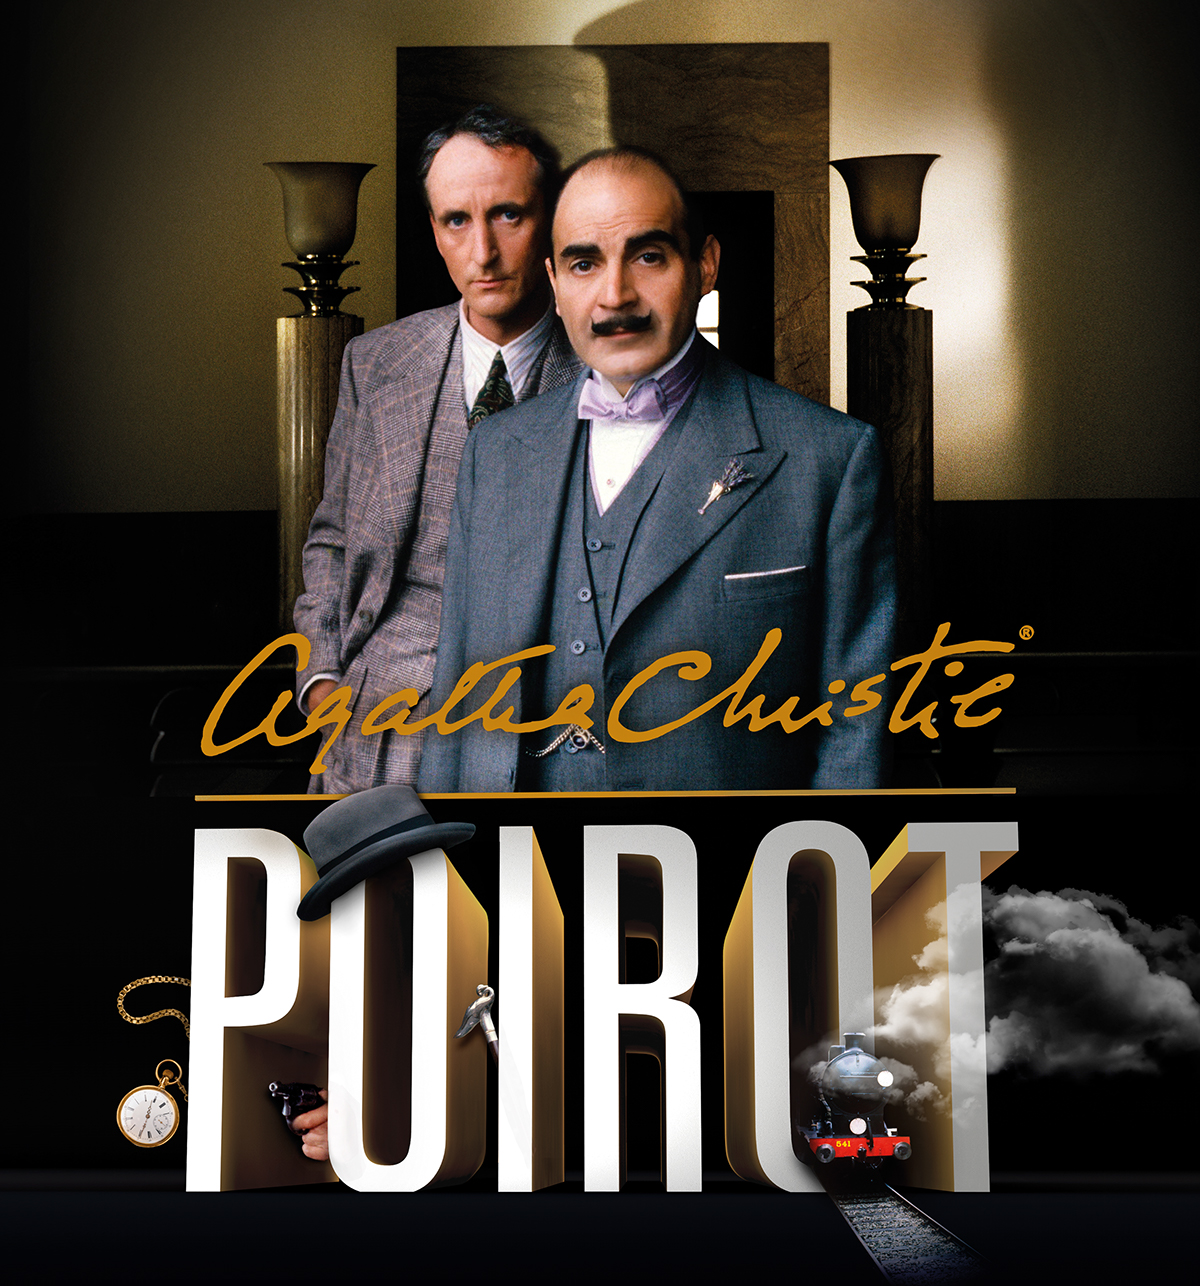 Poirot aghata christie Collection DVD hercule poirot murder detective crime story novel